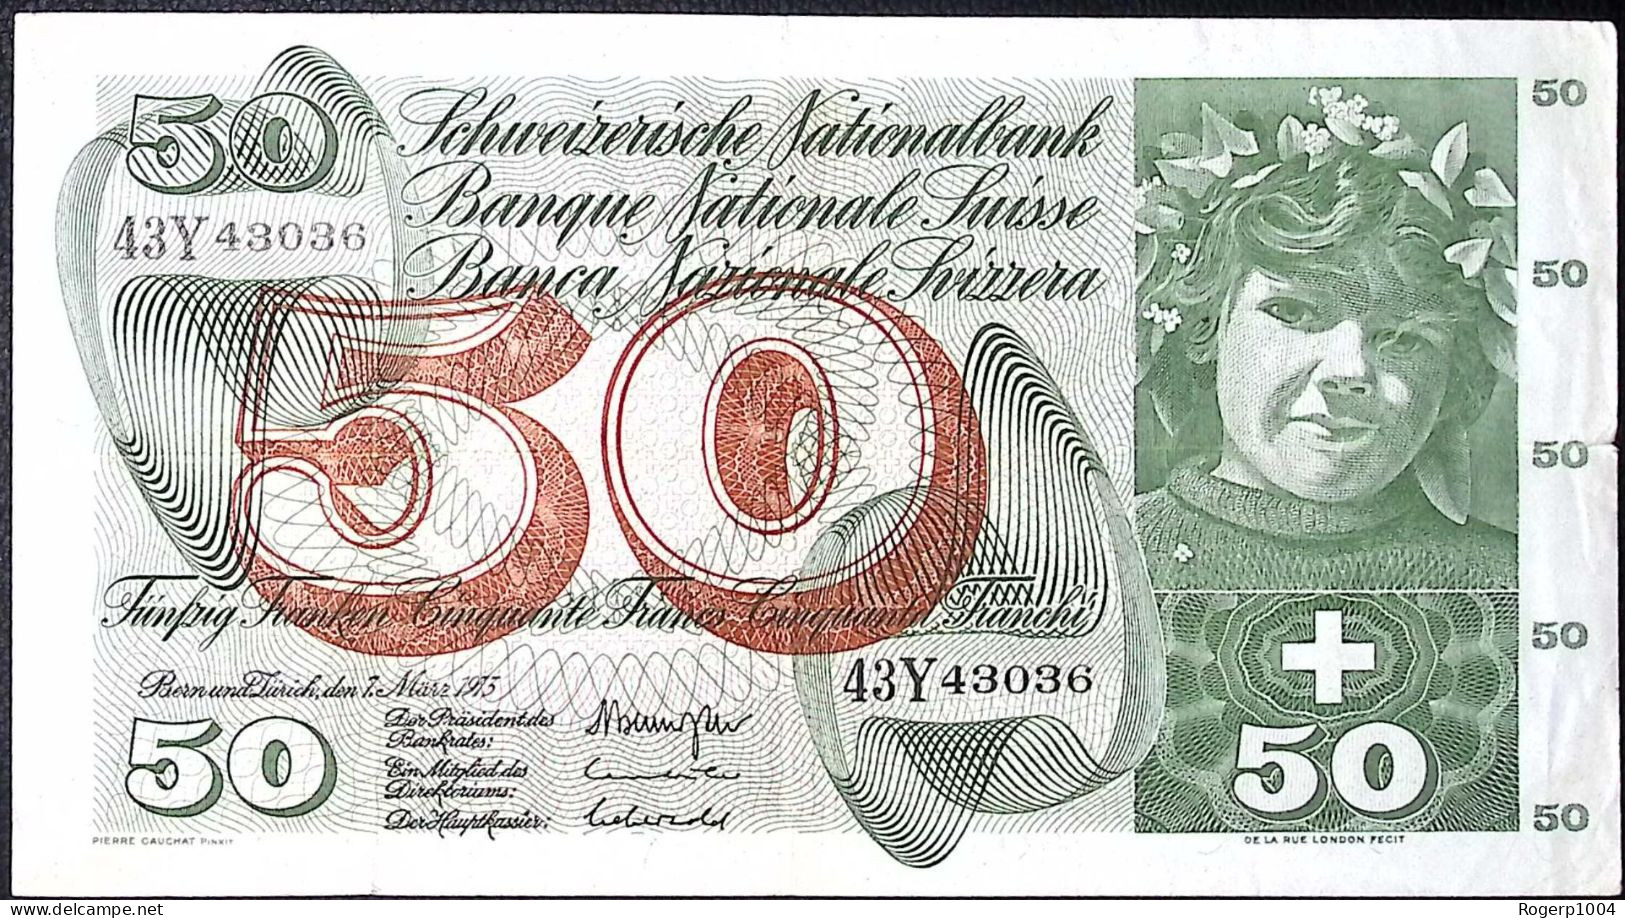 SUISSE/SWITZERLAND * 50 Francs * Cueillette Des Pommes * 07/03/73 * Etat/Grade TTB/VF - Suisse